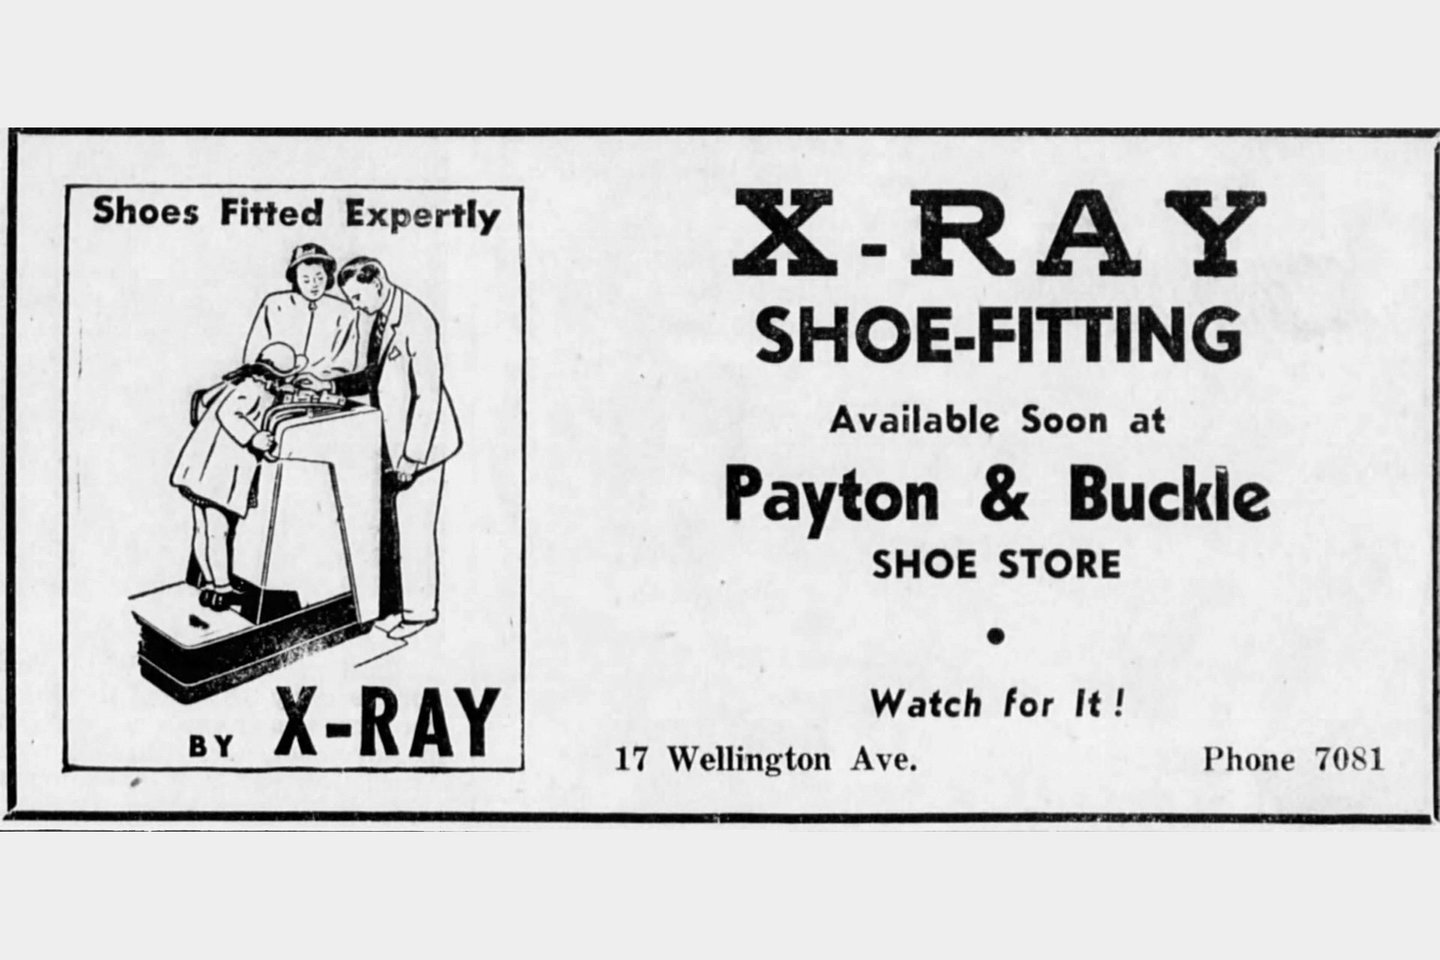  Nuo penktojo iki šeštojo dešimtmečio batų pardavėjai siūlė pasinaudoti fluoroskopais (tiesiogiai matomas vaizdas), kad klientui būtų tinkamai parinkti batai.